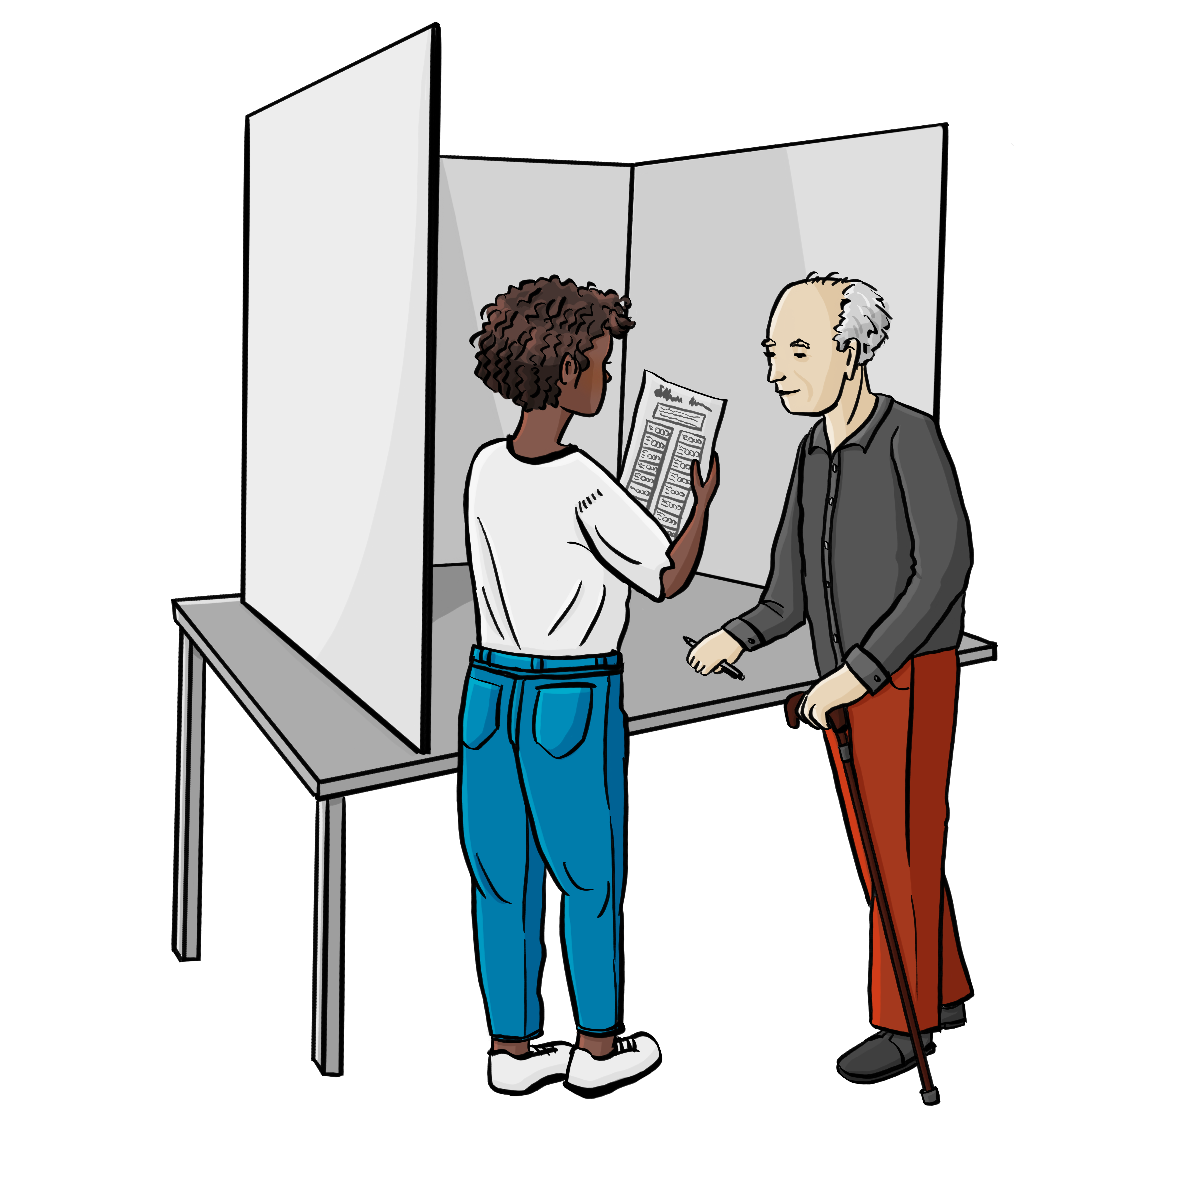 Ein älterer Mann mit Stock und eine Frau stehen hinter einem Sichtschutz. Die Frau hält einen Stimmzettel in der Hand. 